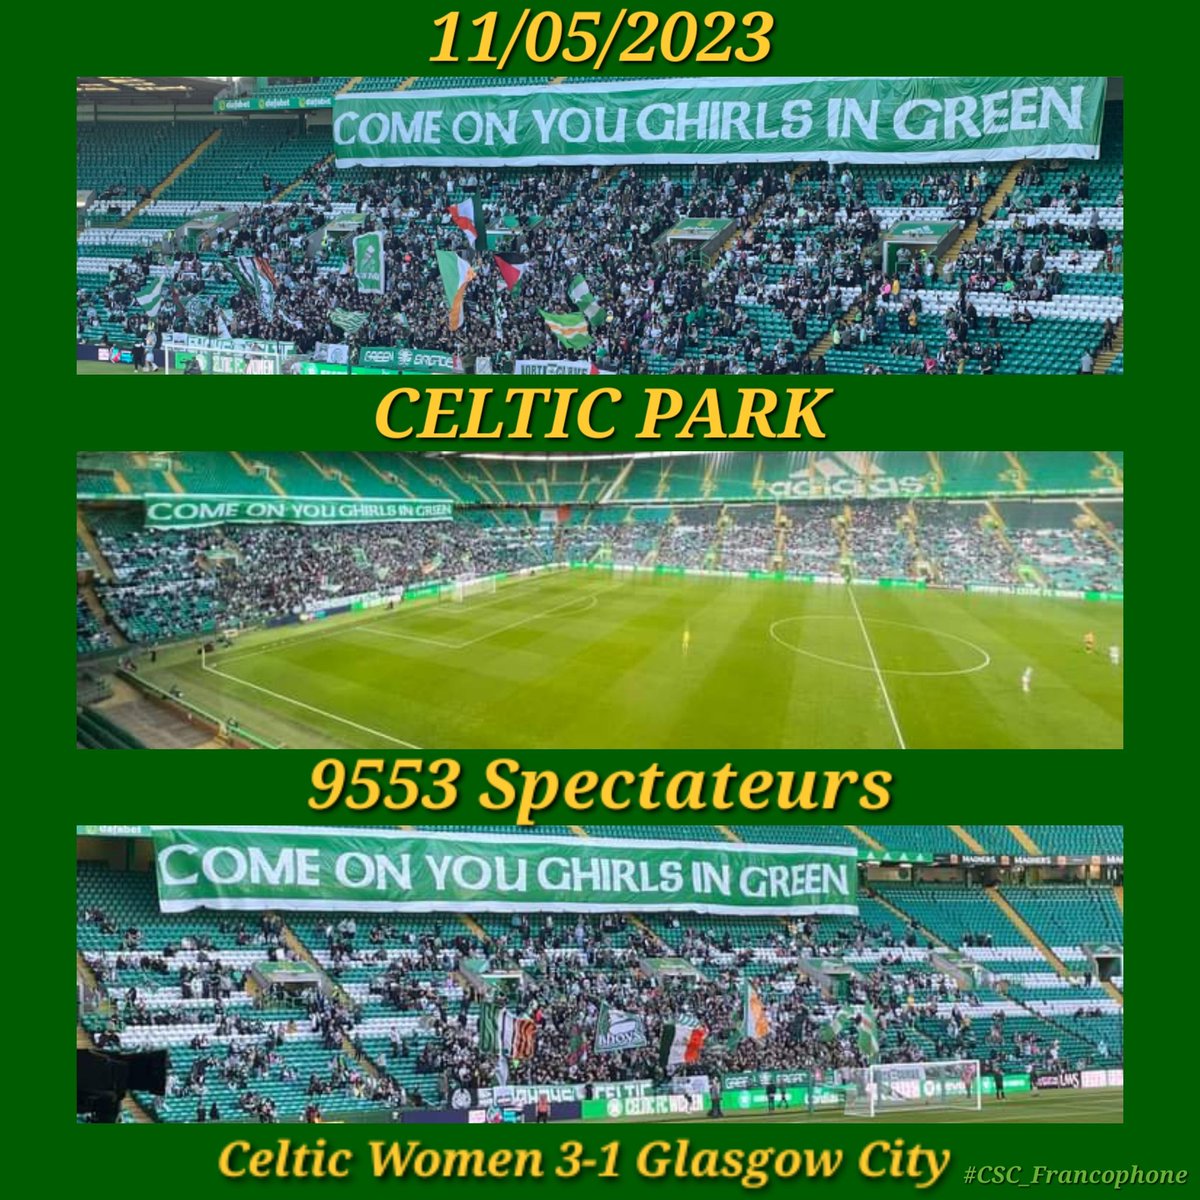 Victoire 3-1 des filles dans le match du haut de classement contre Glasgow City. 
Au-delà de la victoire, on va retenir le record de prés de 10 000 personnes à Celtic Park pour un match de championnat féminin écossais.👏🏼

#CELCIT #SWPL #COYGIG
🍀🇮🇪🍀🏴󠁧󠁢󠁳󠁣󠁴󠁿🍀